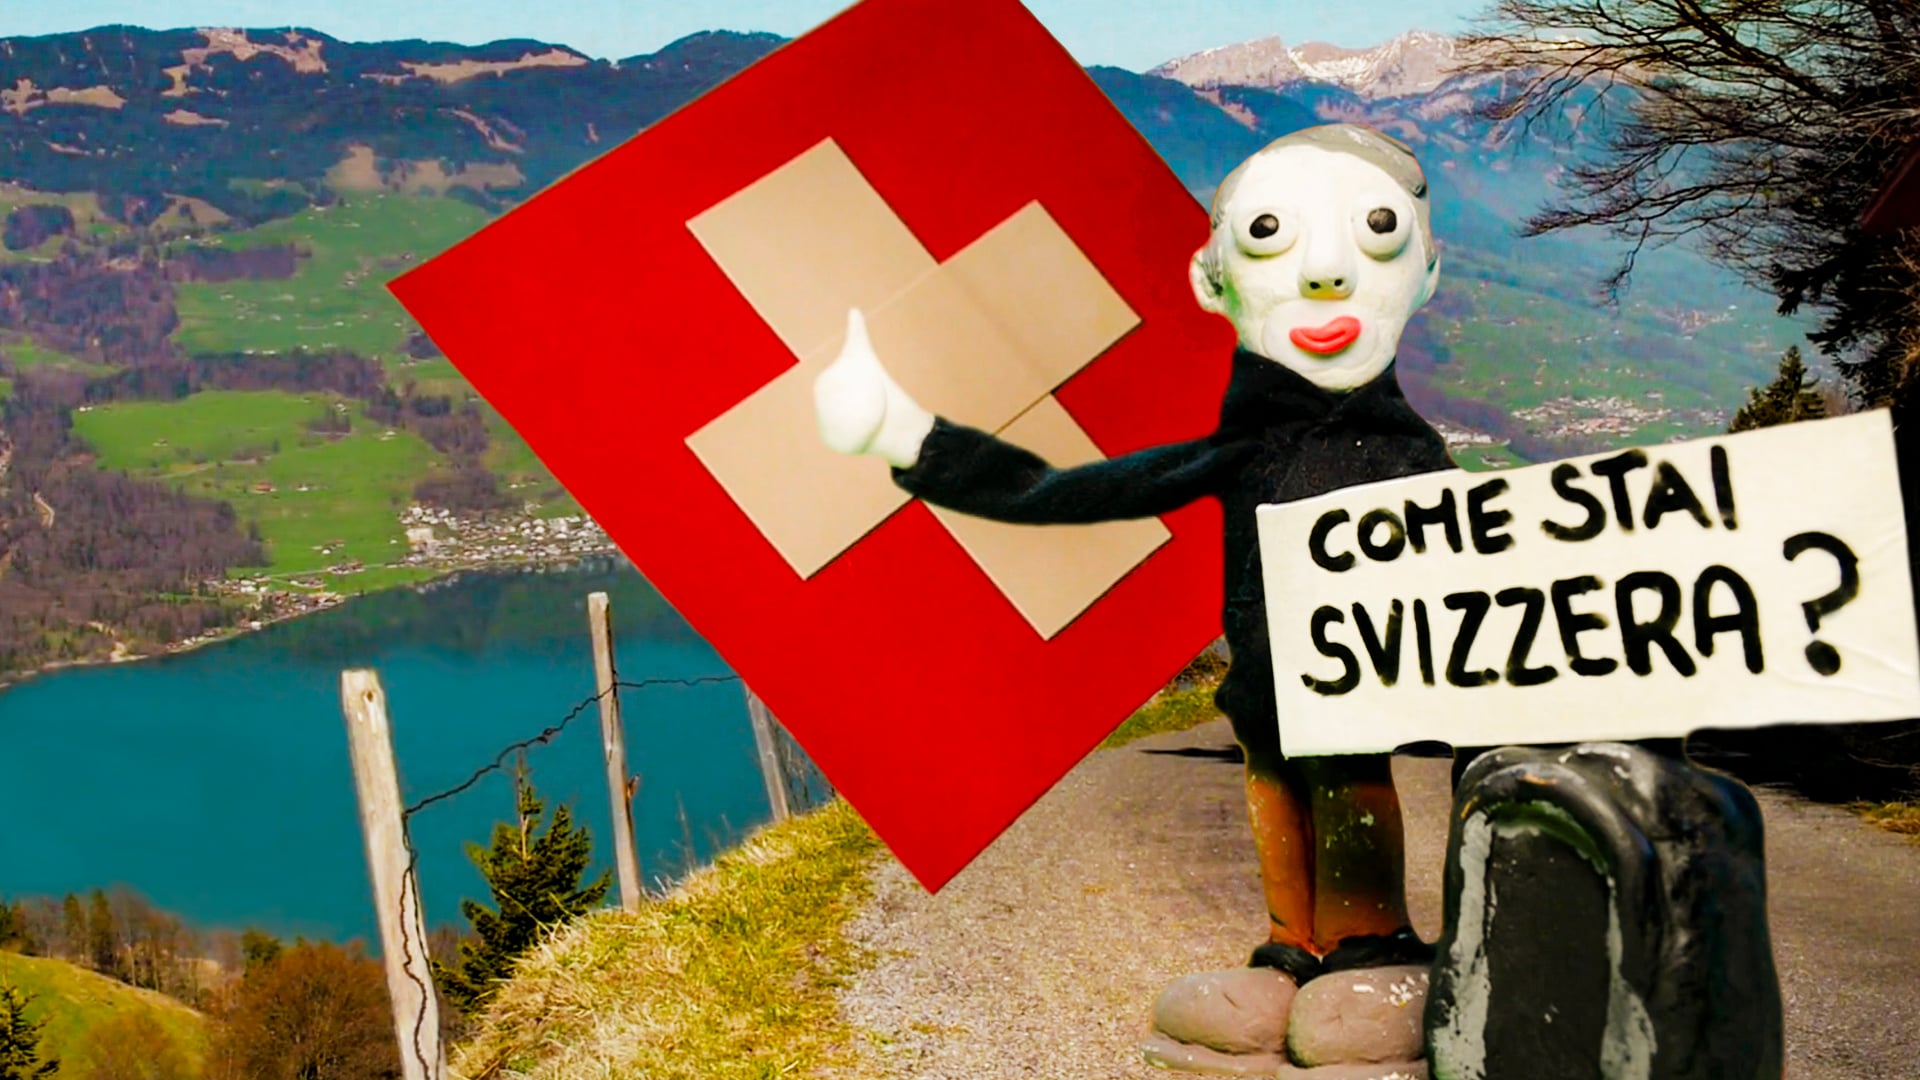 Come stai Svizzera?